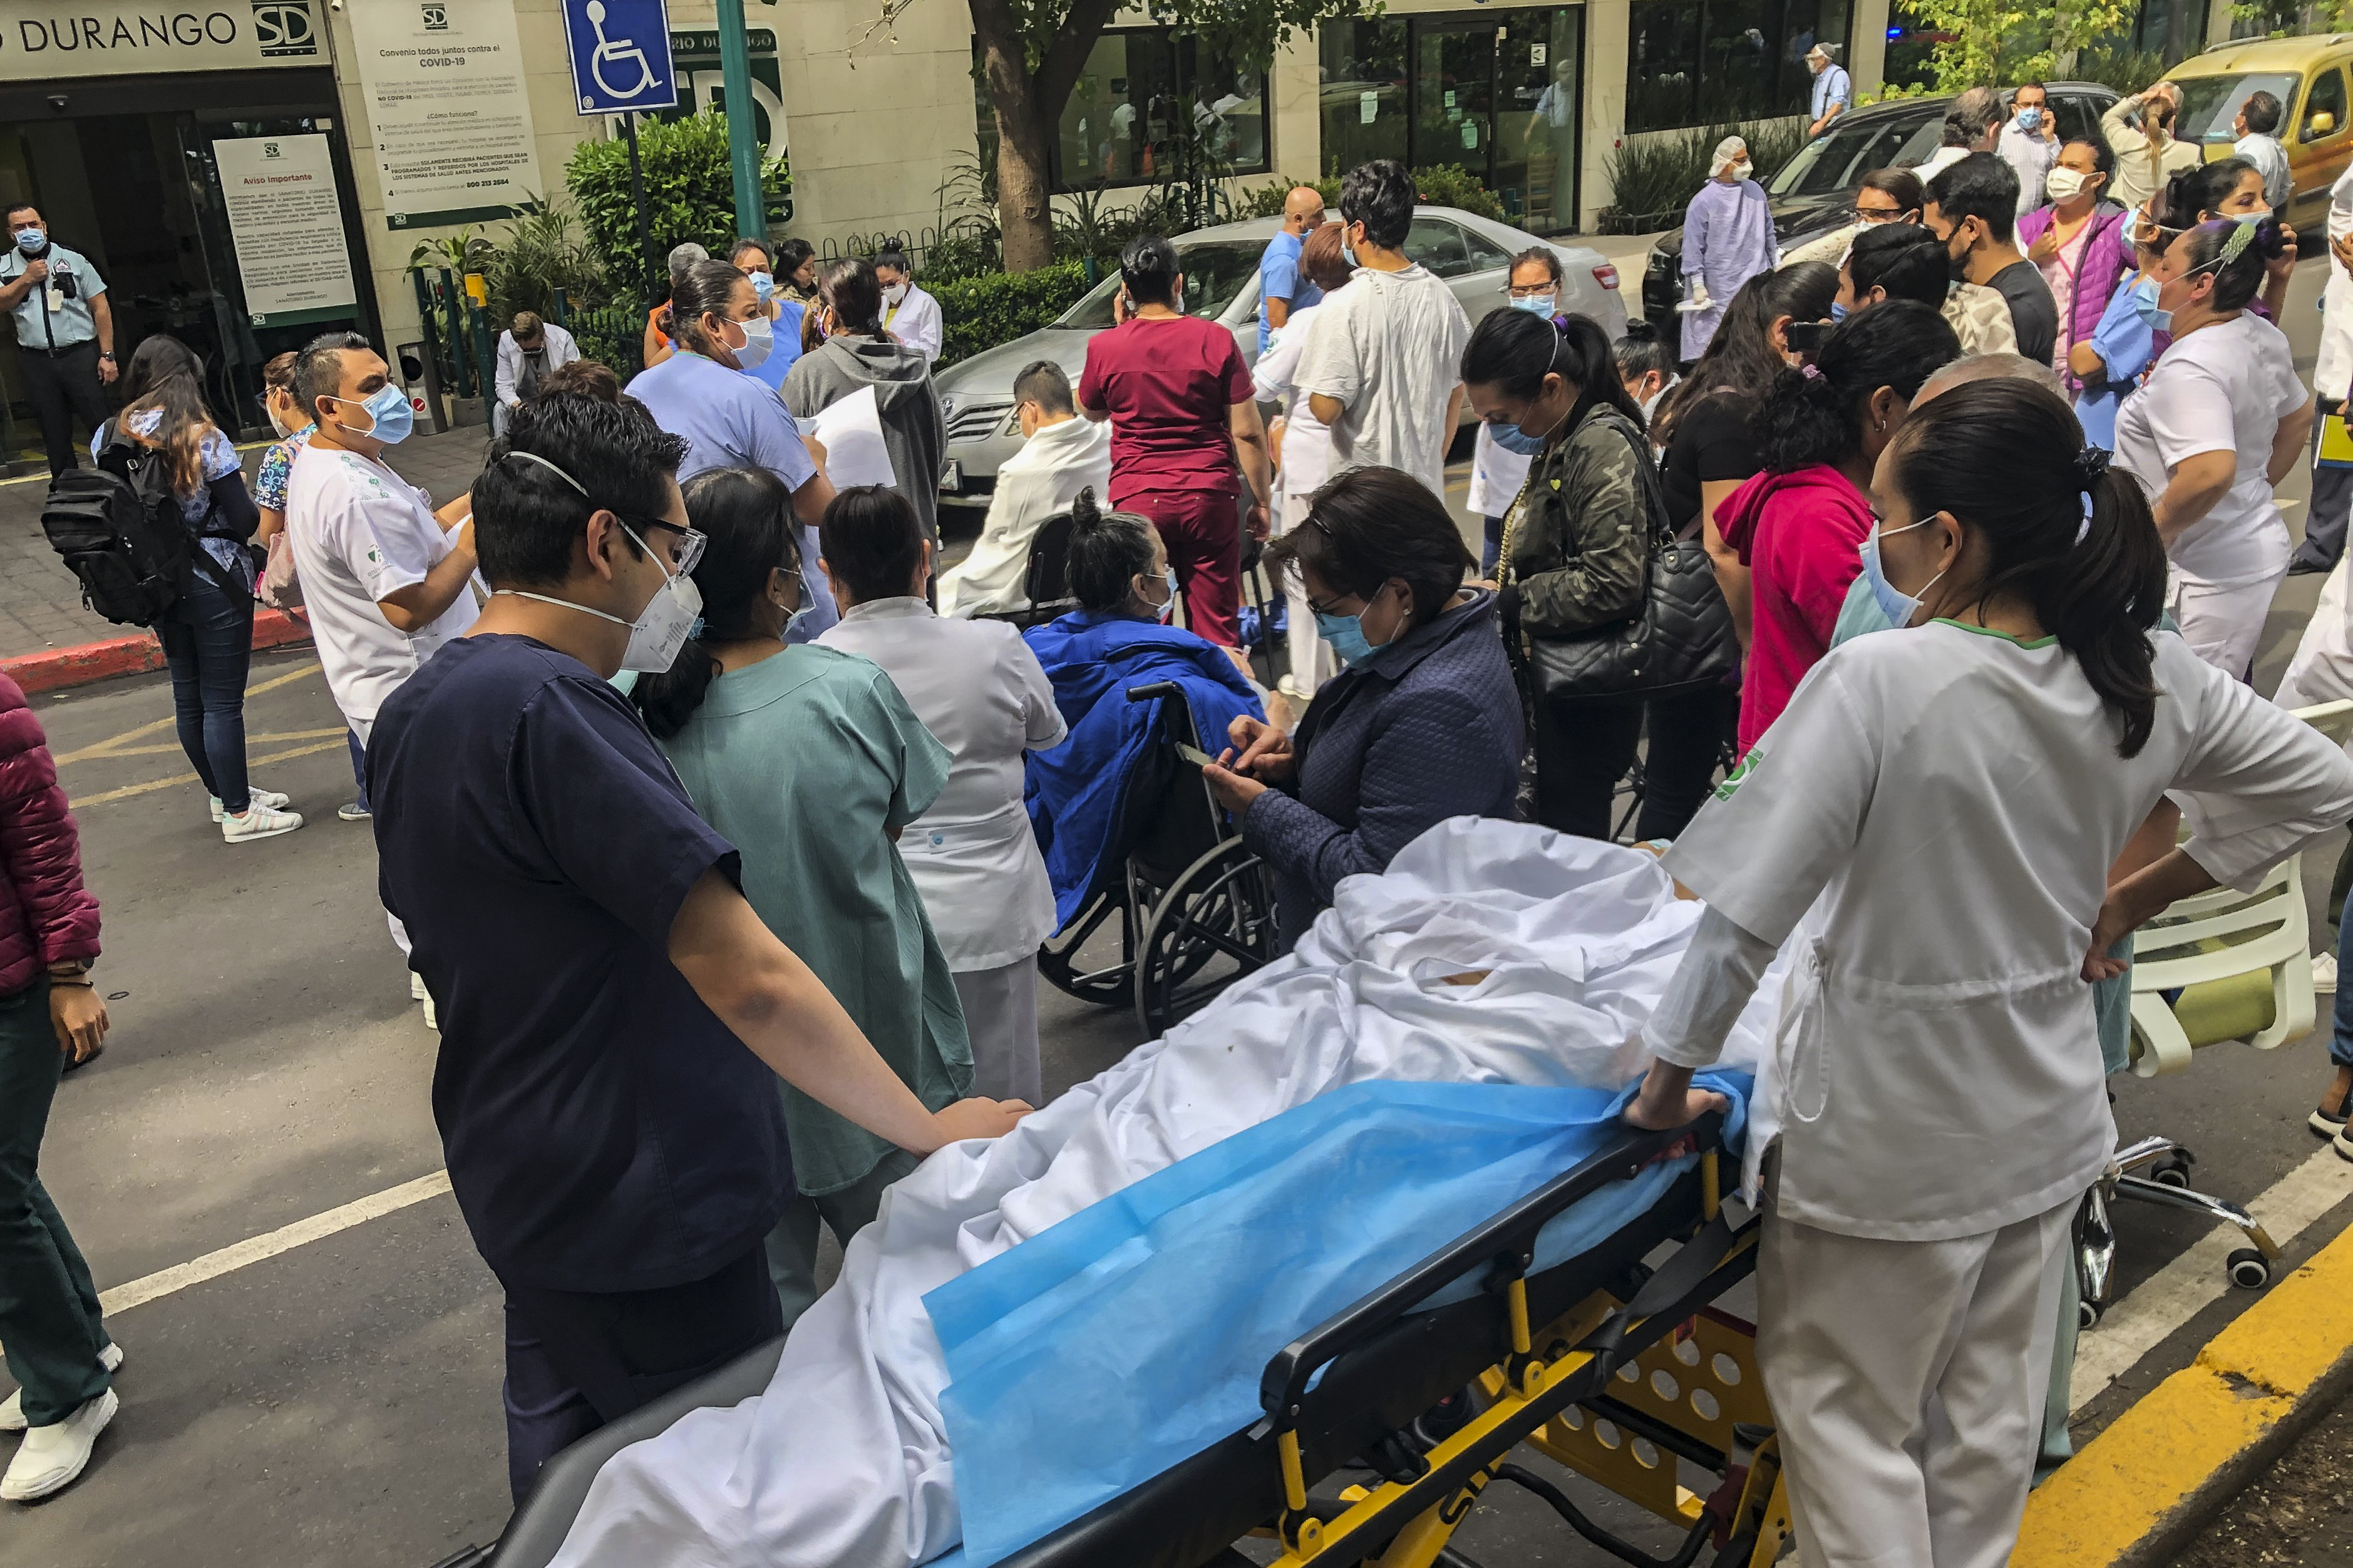 Desalojos y nerviosismo en hospitales por el terremoto de 7.5 grados en México